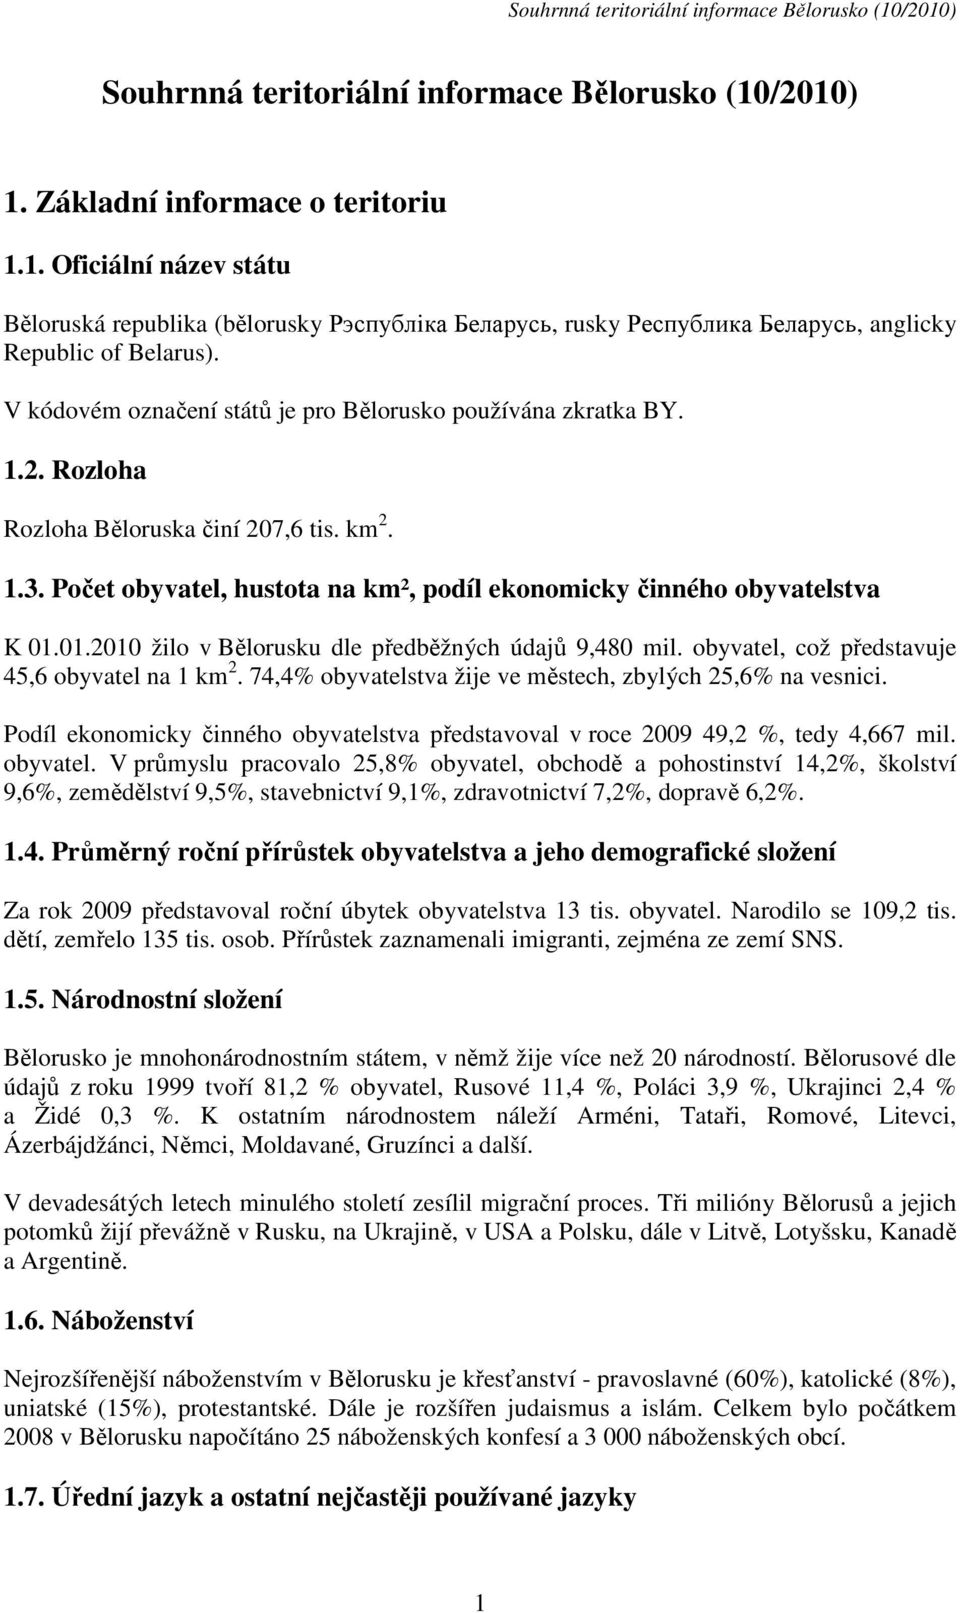 01.2010 žilo v Bělorusku dle předběžných údajů 9,480 mil. obyvatel, což představuje 45,6 obyvatel na 1 km 2. 74,4% obyvatelstva žije ve městech, zbylých 25,6% na vesnici.